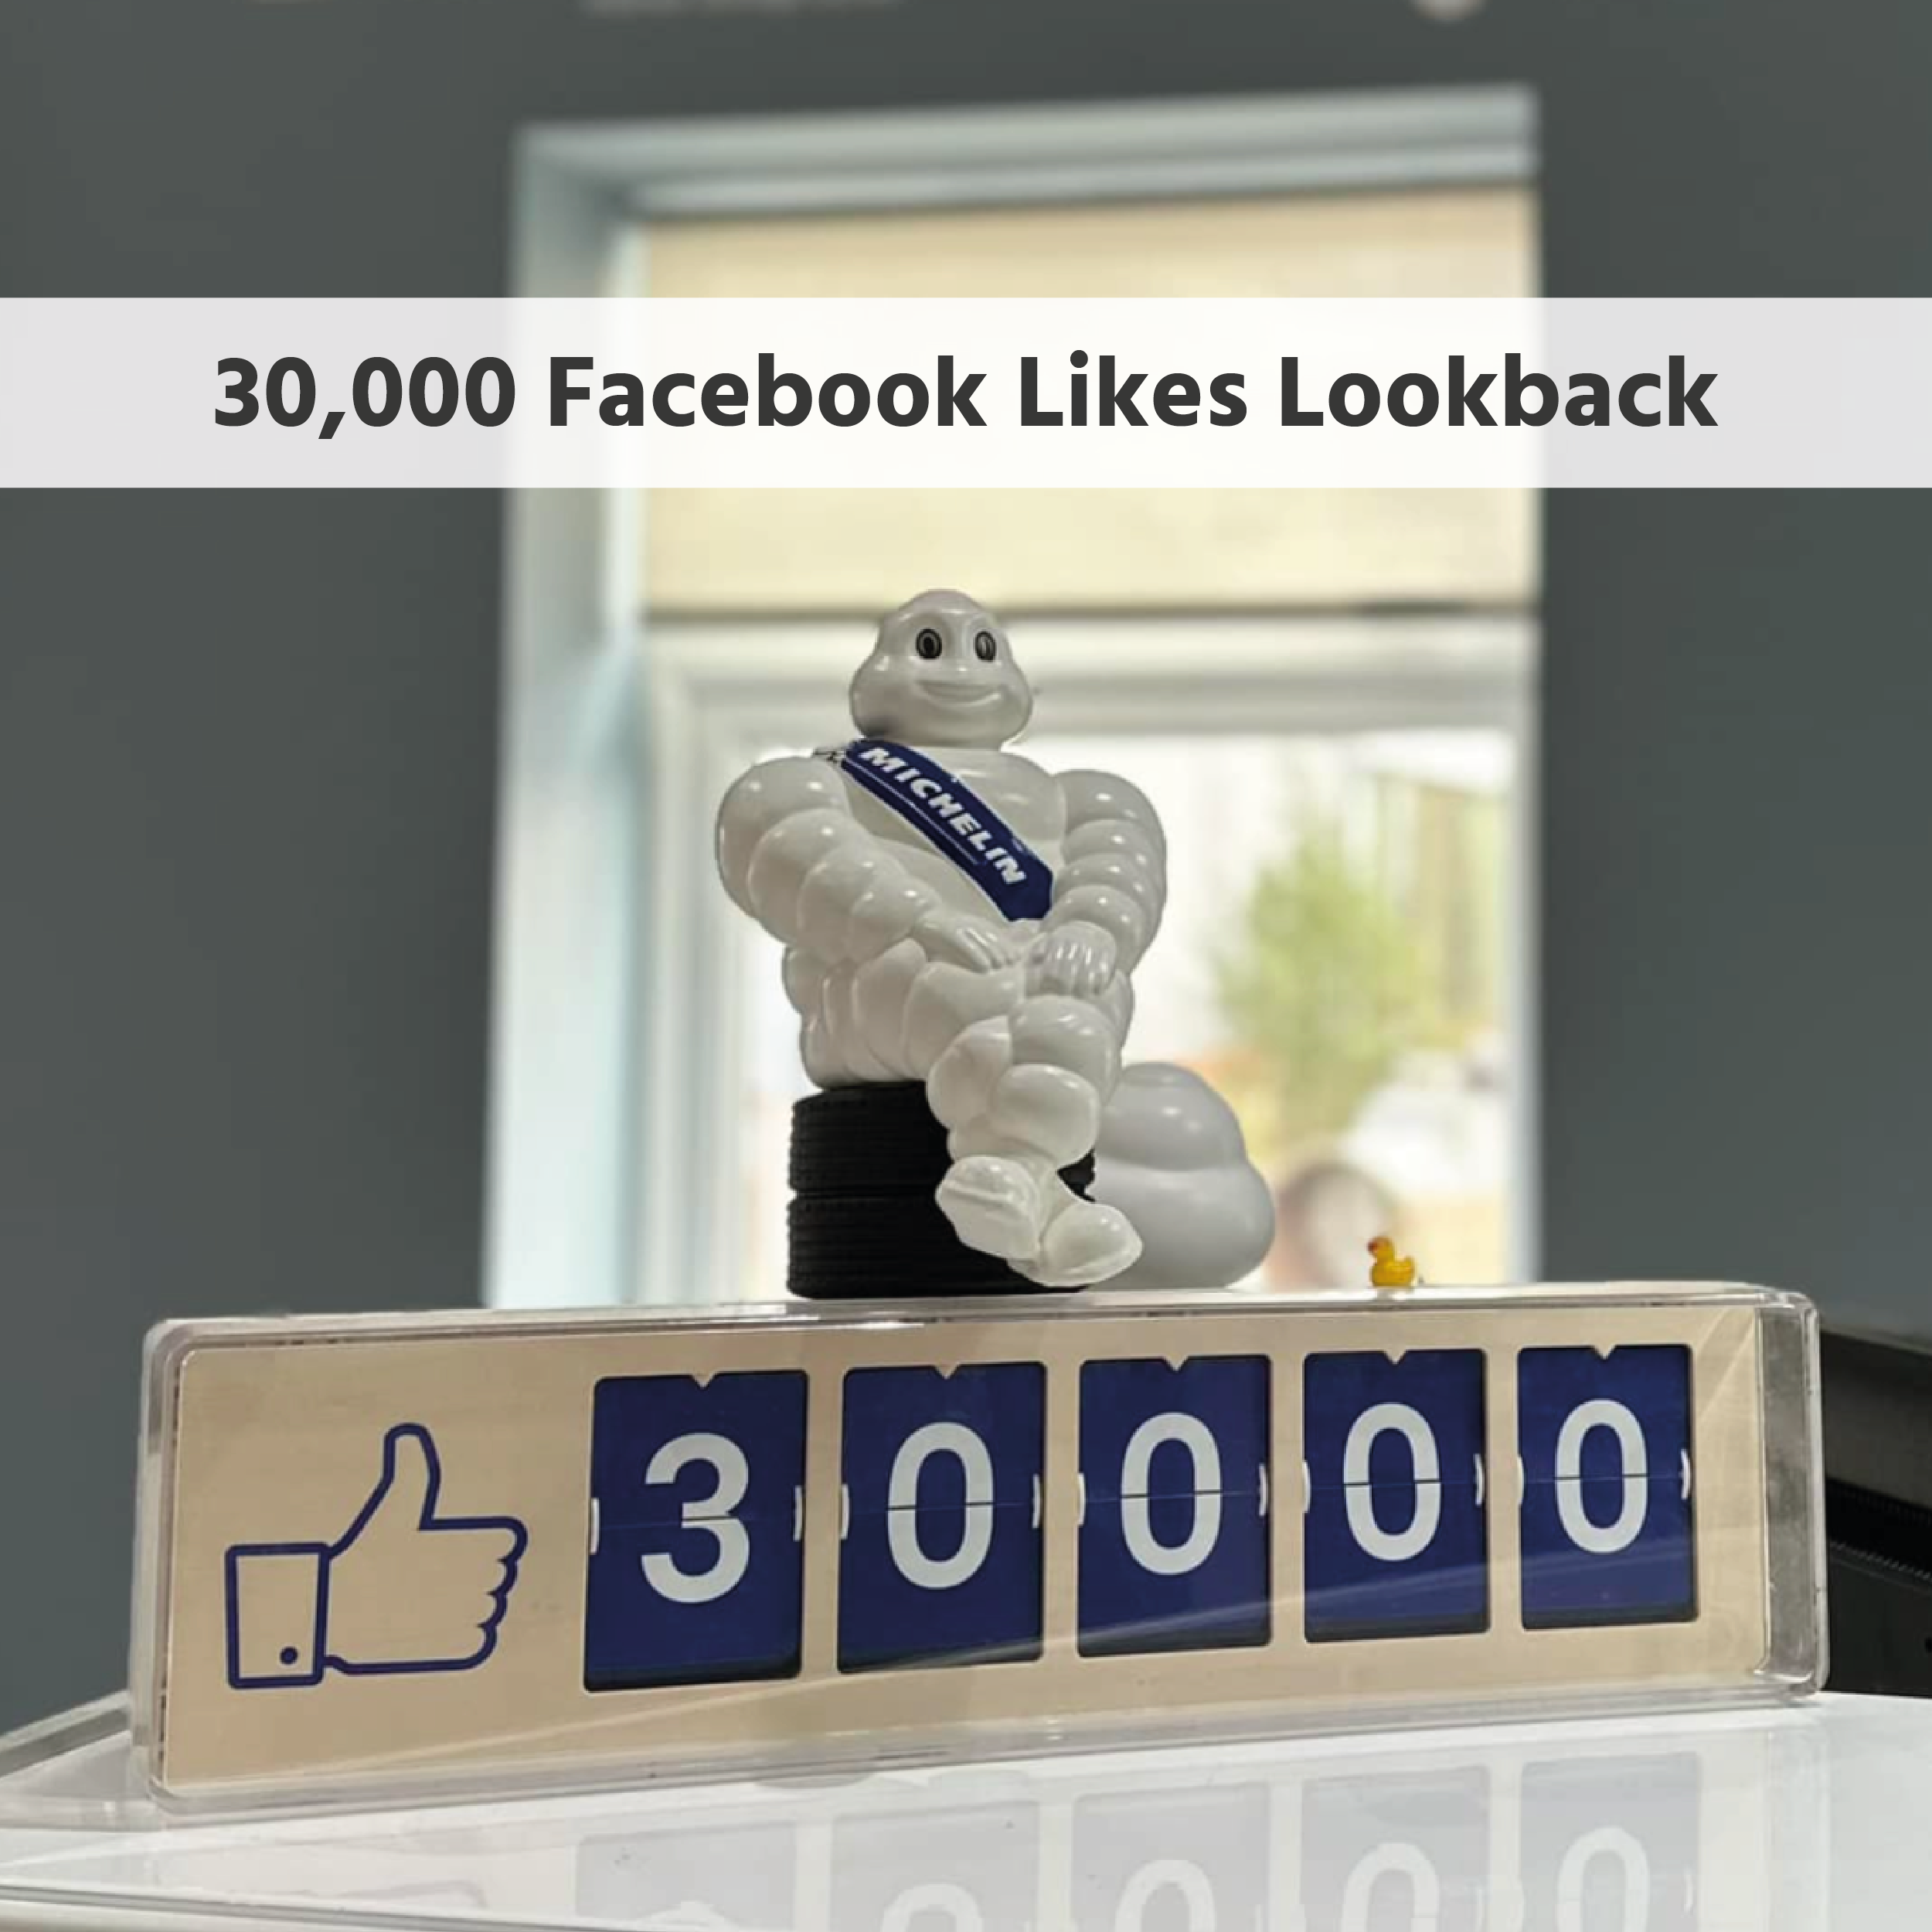 Image of 30,000 Facebook Likes Lookback